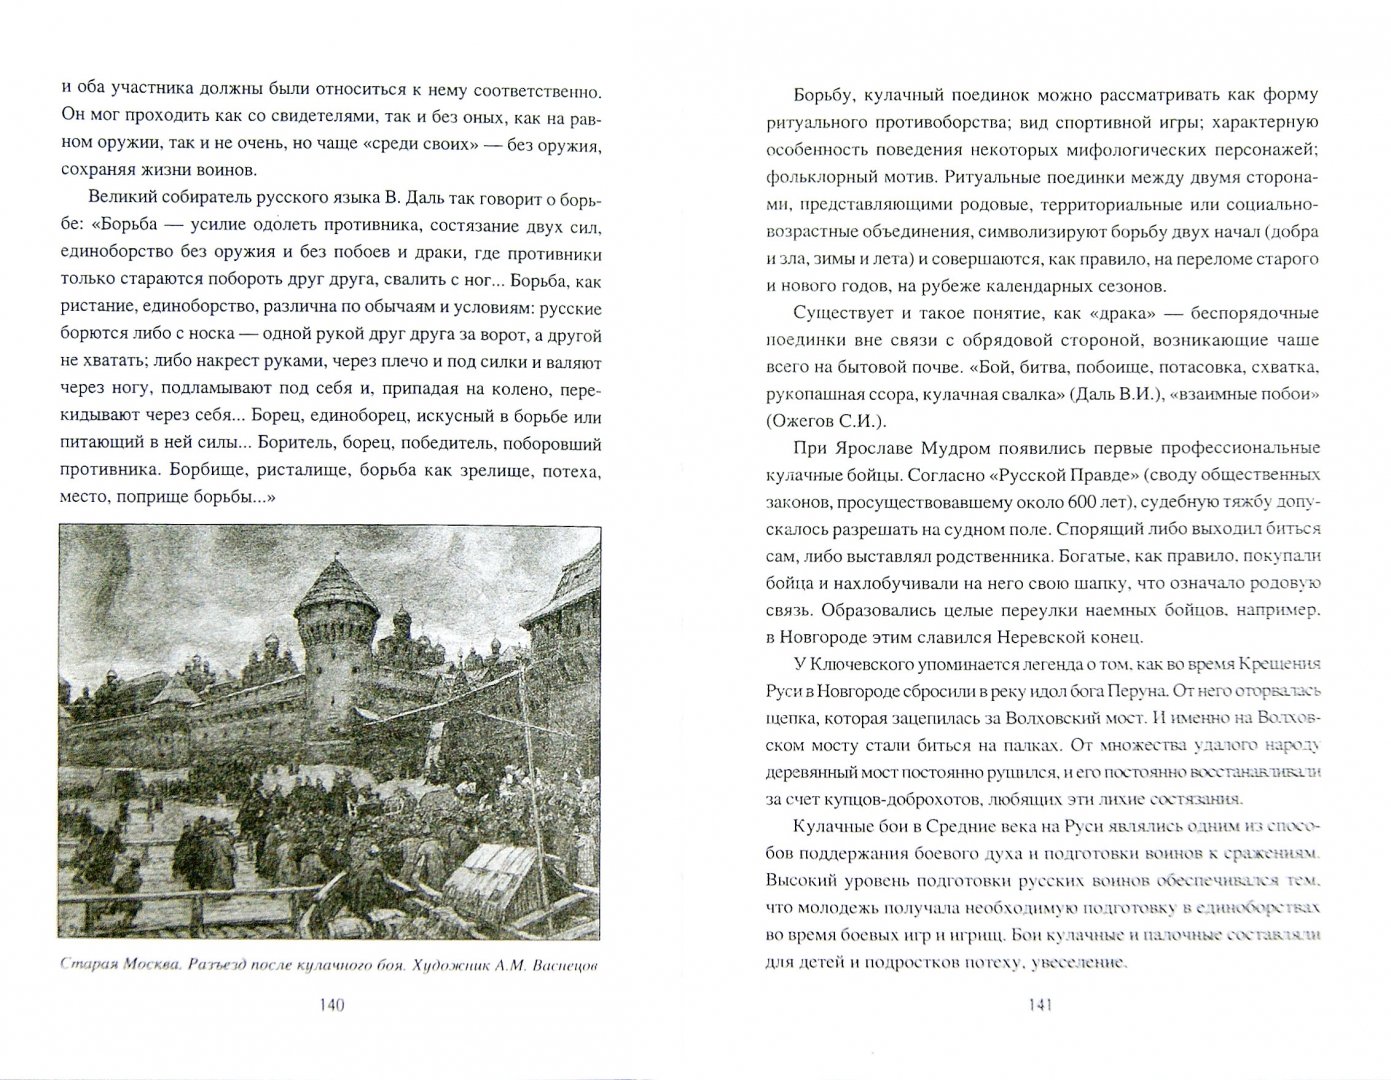 Иллюстрация 1 из 6 для Русские воинские традиции - Сергей Максимов | Лабиринт - книги. Источник: Лабиринт